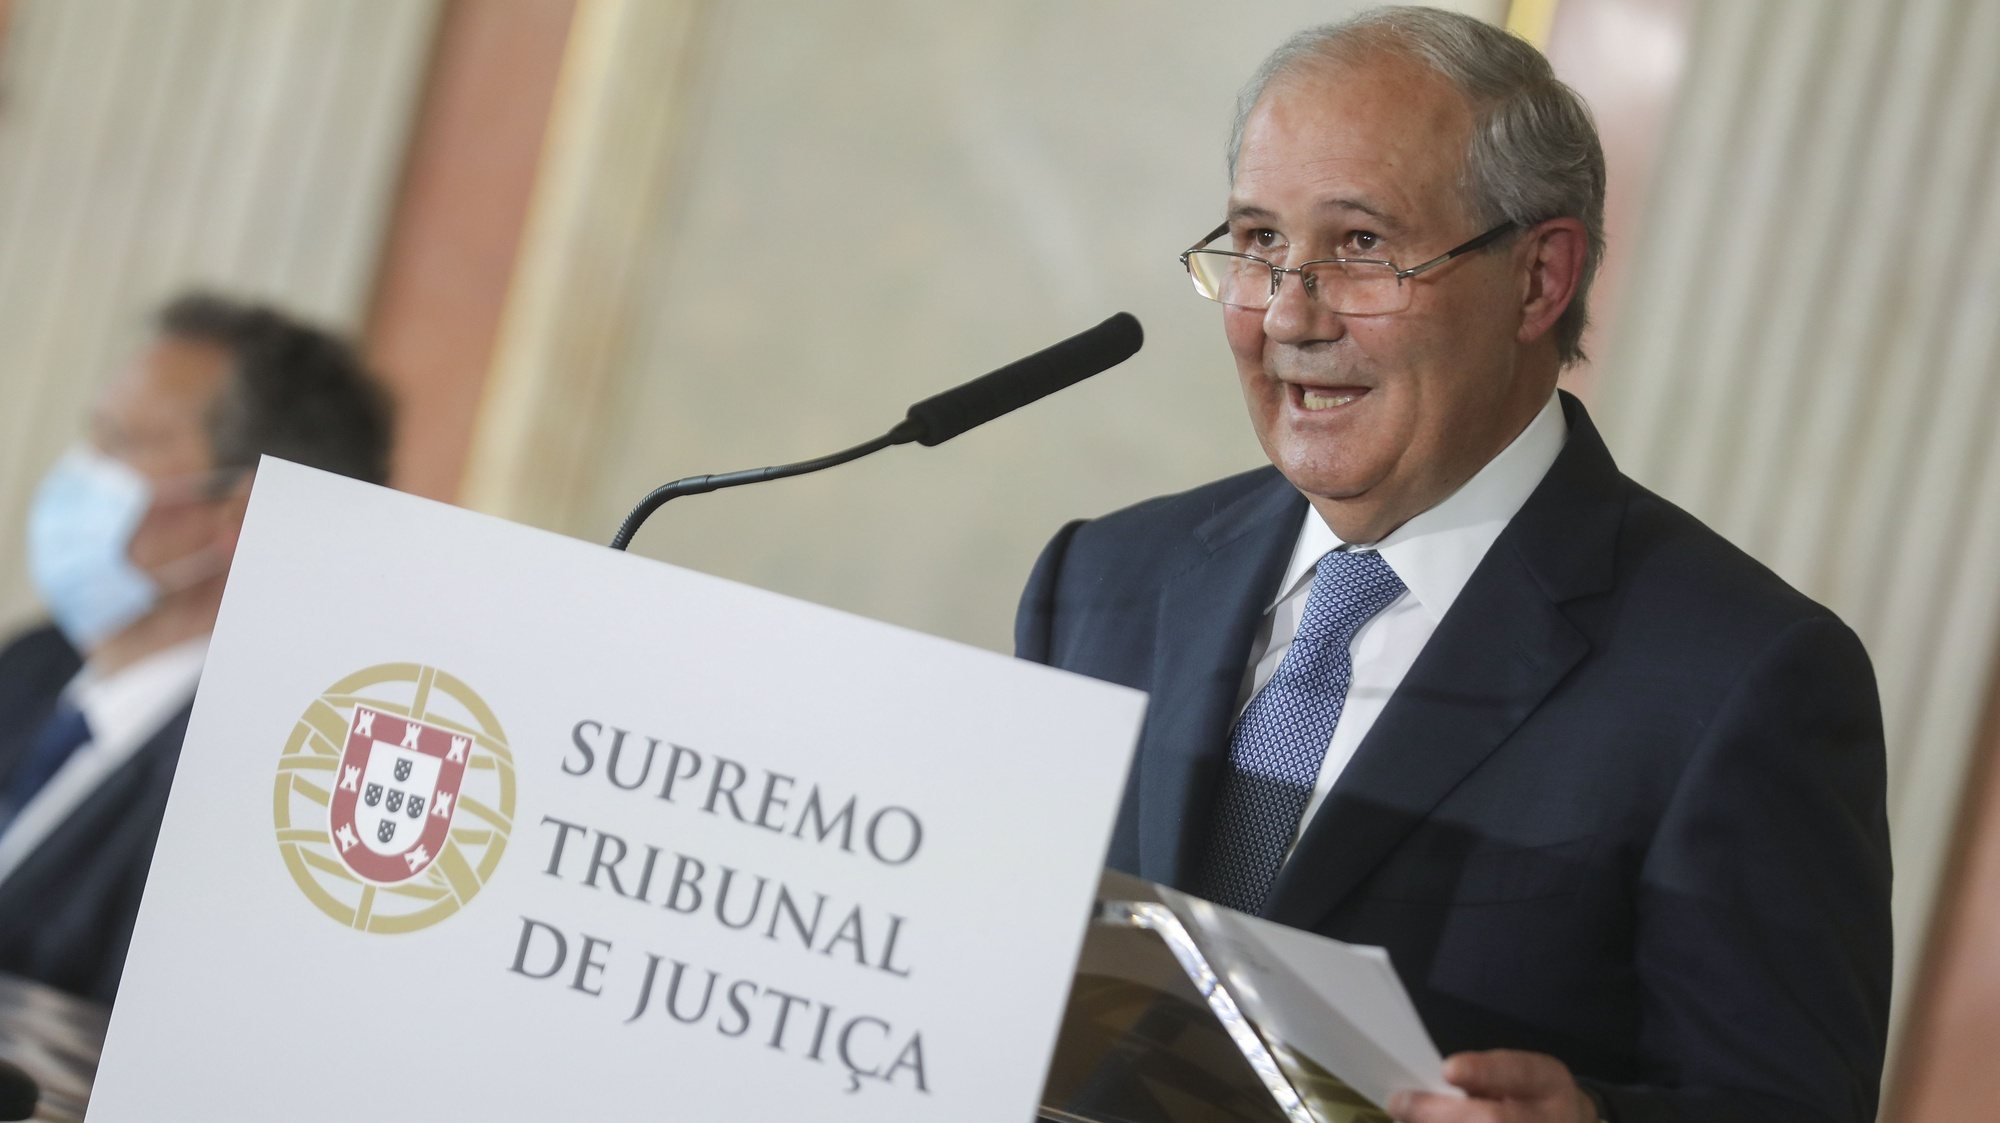 O presidente do Supremo Tribunal de Justiça (STJ), António Joaquim Piçarra, intervém durante a cerimónia de reinauguração das instalações do Supremo Tribunal de Justiça, em Lisboa, 13 de maio de 2021. MIGUEL A. LOPES/LUSA